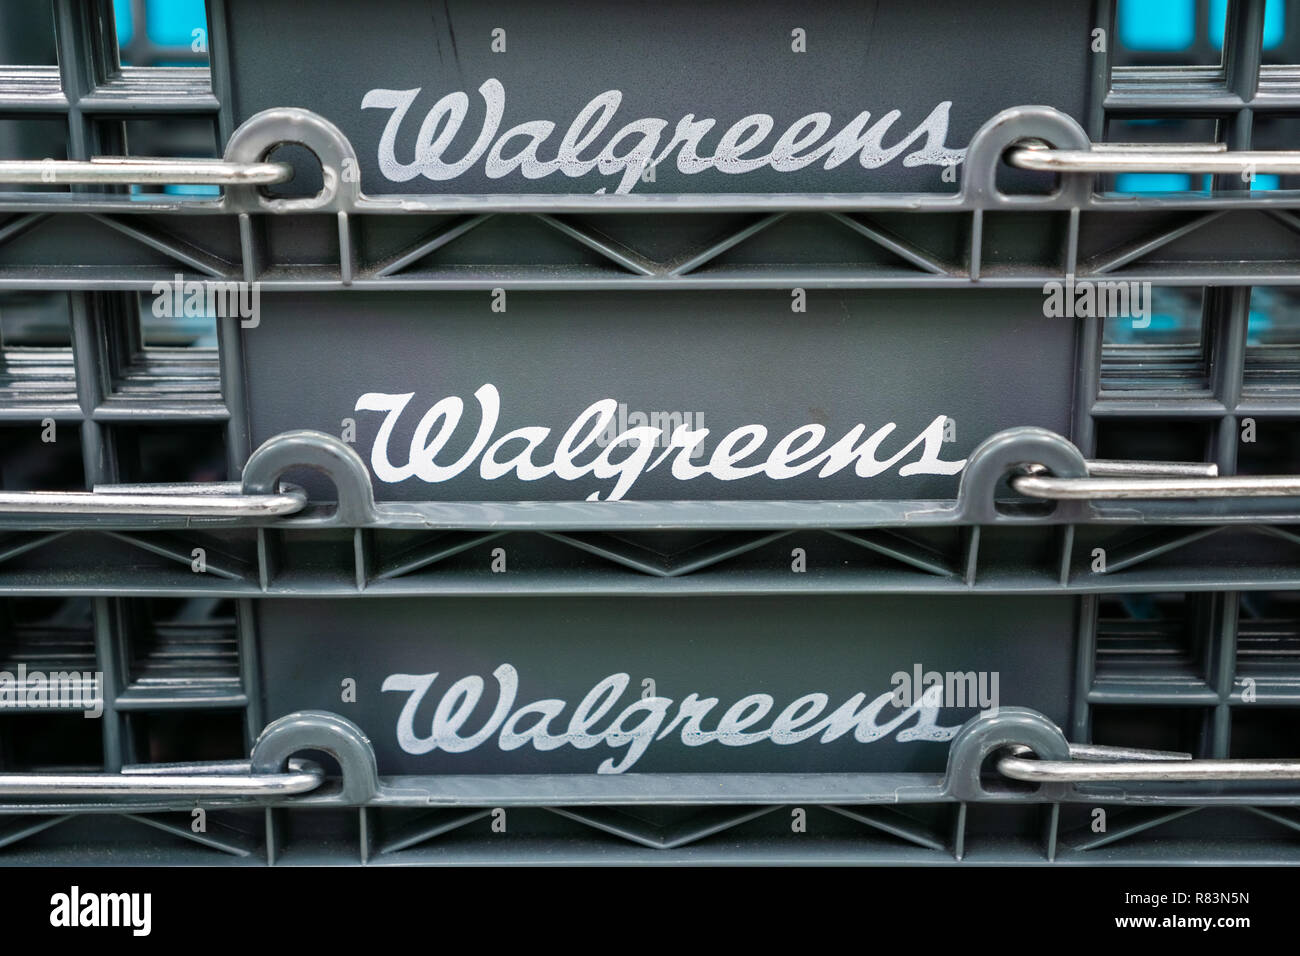 14 août 2018 Sunnyvale / CA / USA - Walgreens logo affiché sur des paniers dans l'un de leurs emplacements dans le sud de San Francisco bay area Banque D'Images